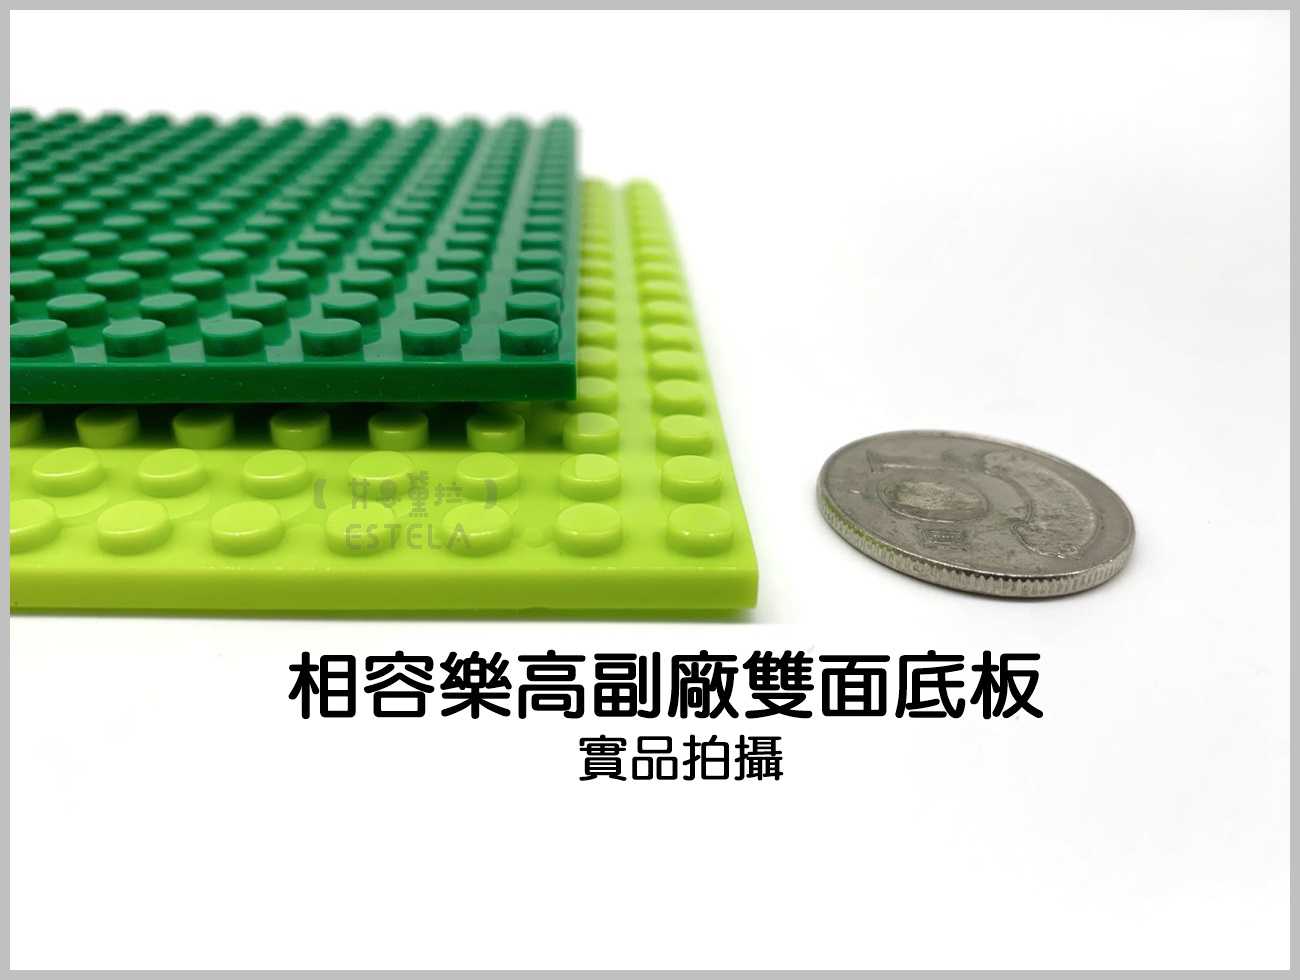 【艾思黛拉A0719】副廠 相容樂高 小顆粒 雙面底板 16*16顆粒 7款可選 12.8x12.8公分 積木 LEGO